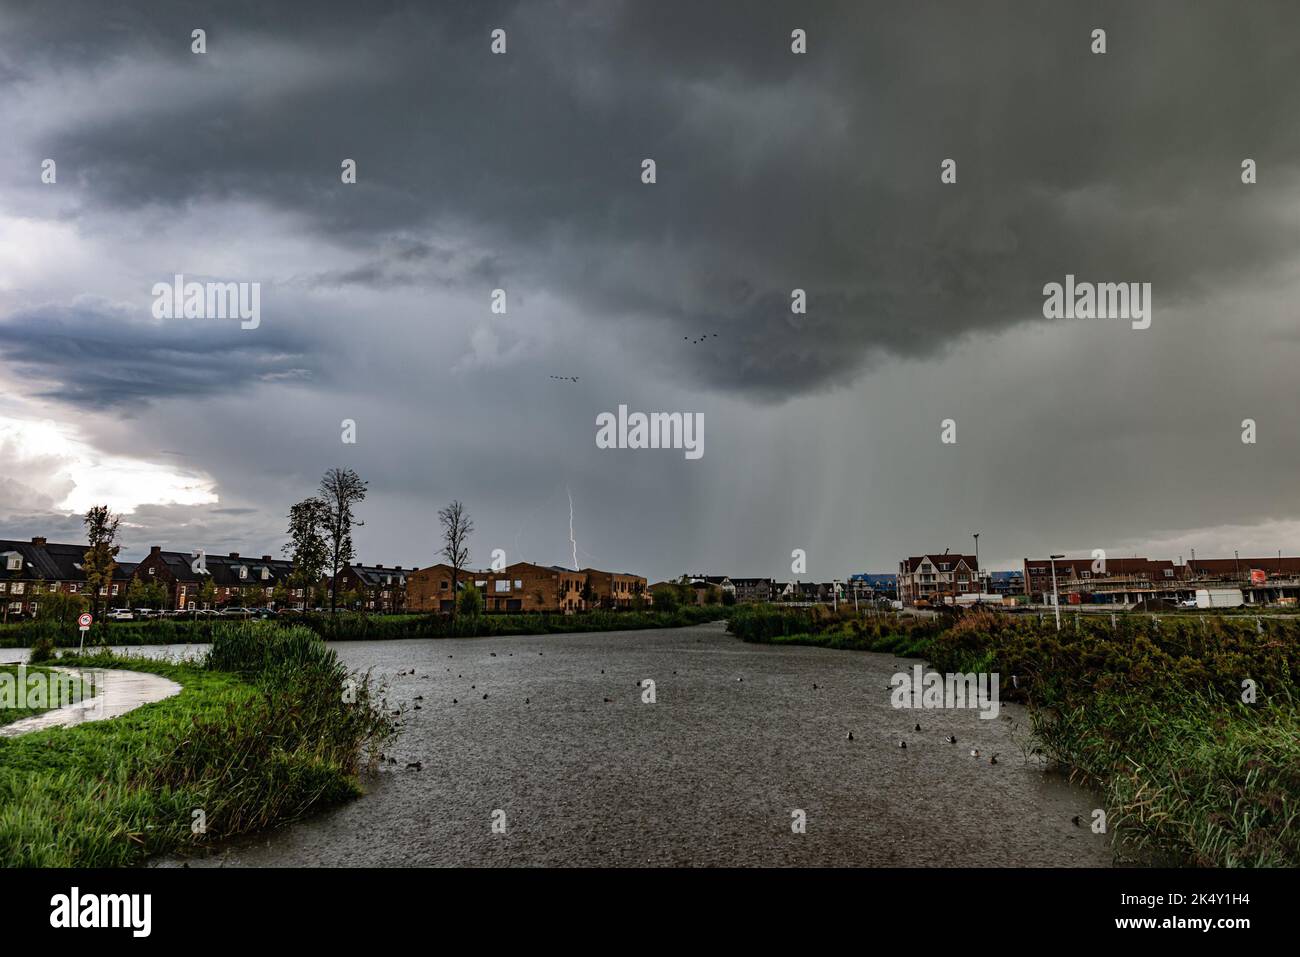 Des nuages et des éclairs spectaculaires frappent au cours d'un orage avec de fortes pluies dans l'eau d'un étang Banque D'Images